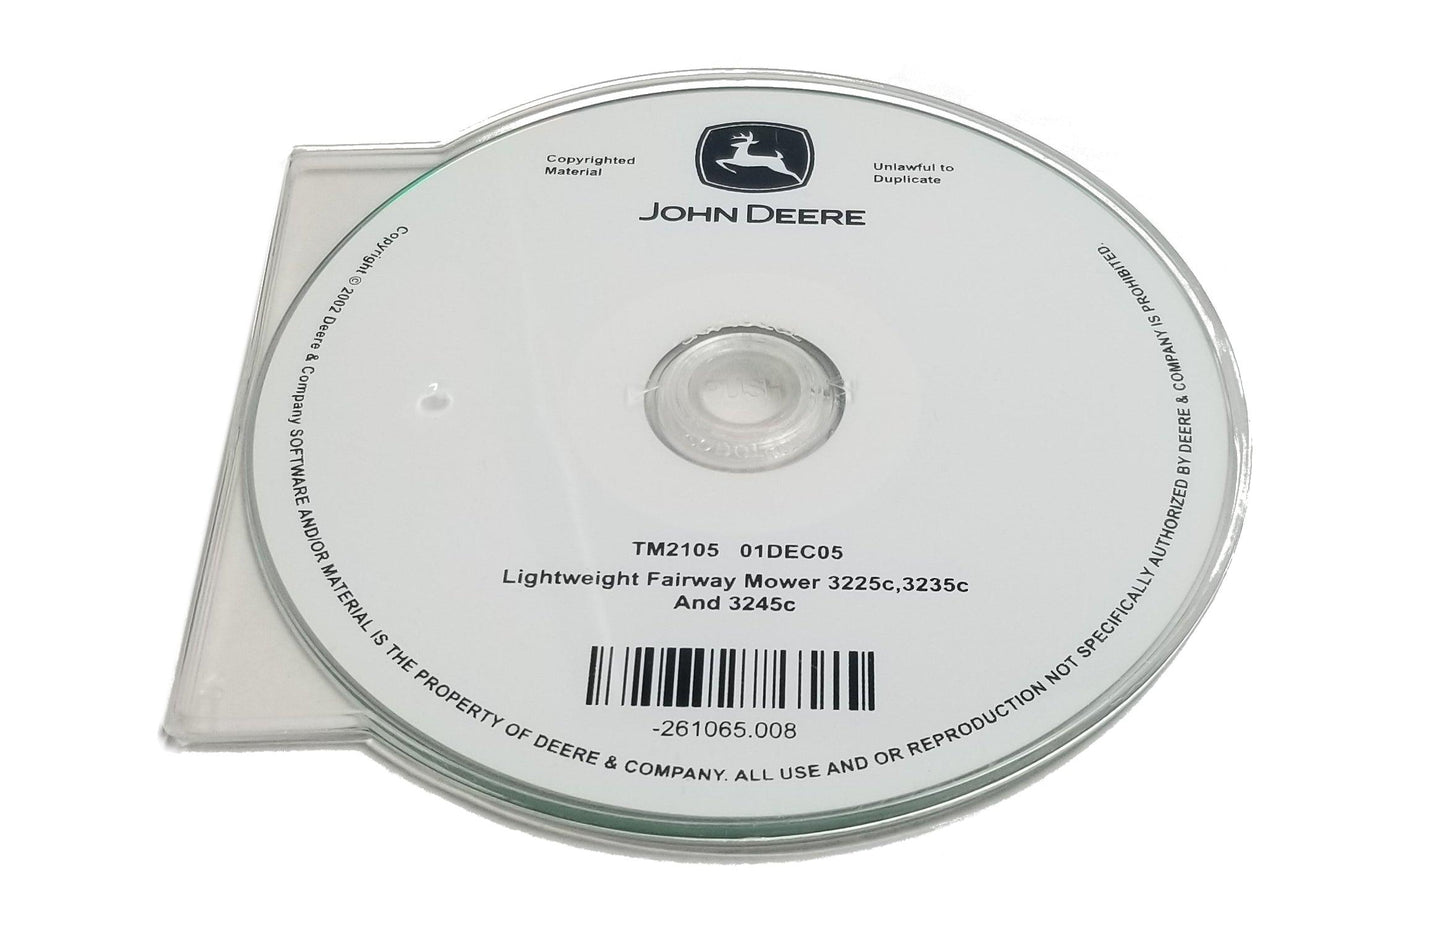 John Deere 3225C/3235C/3245C Mowers Technical CD Manual - TM2105CD